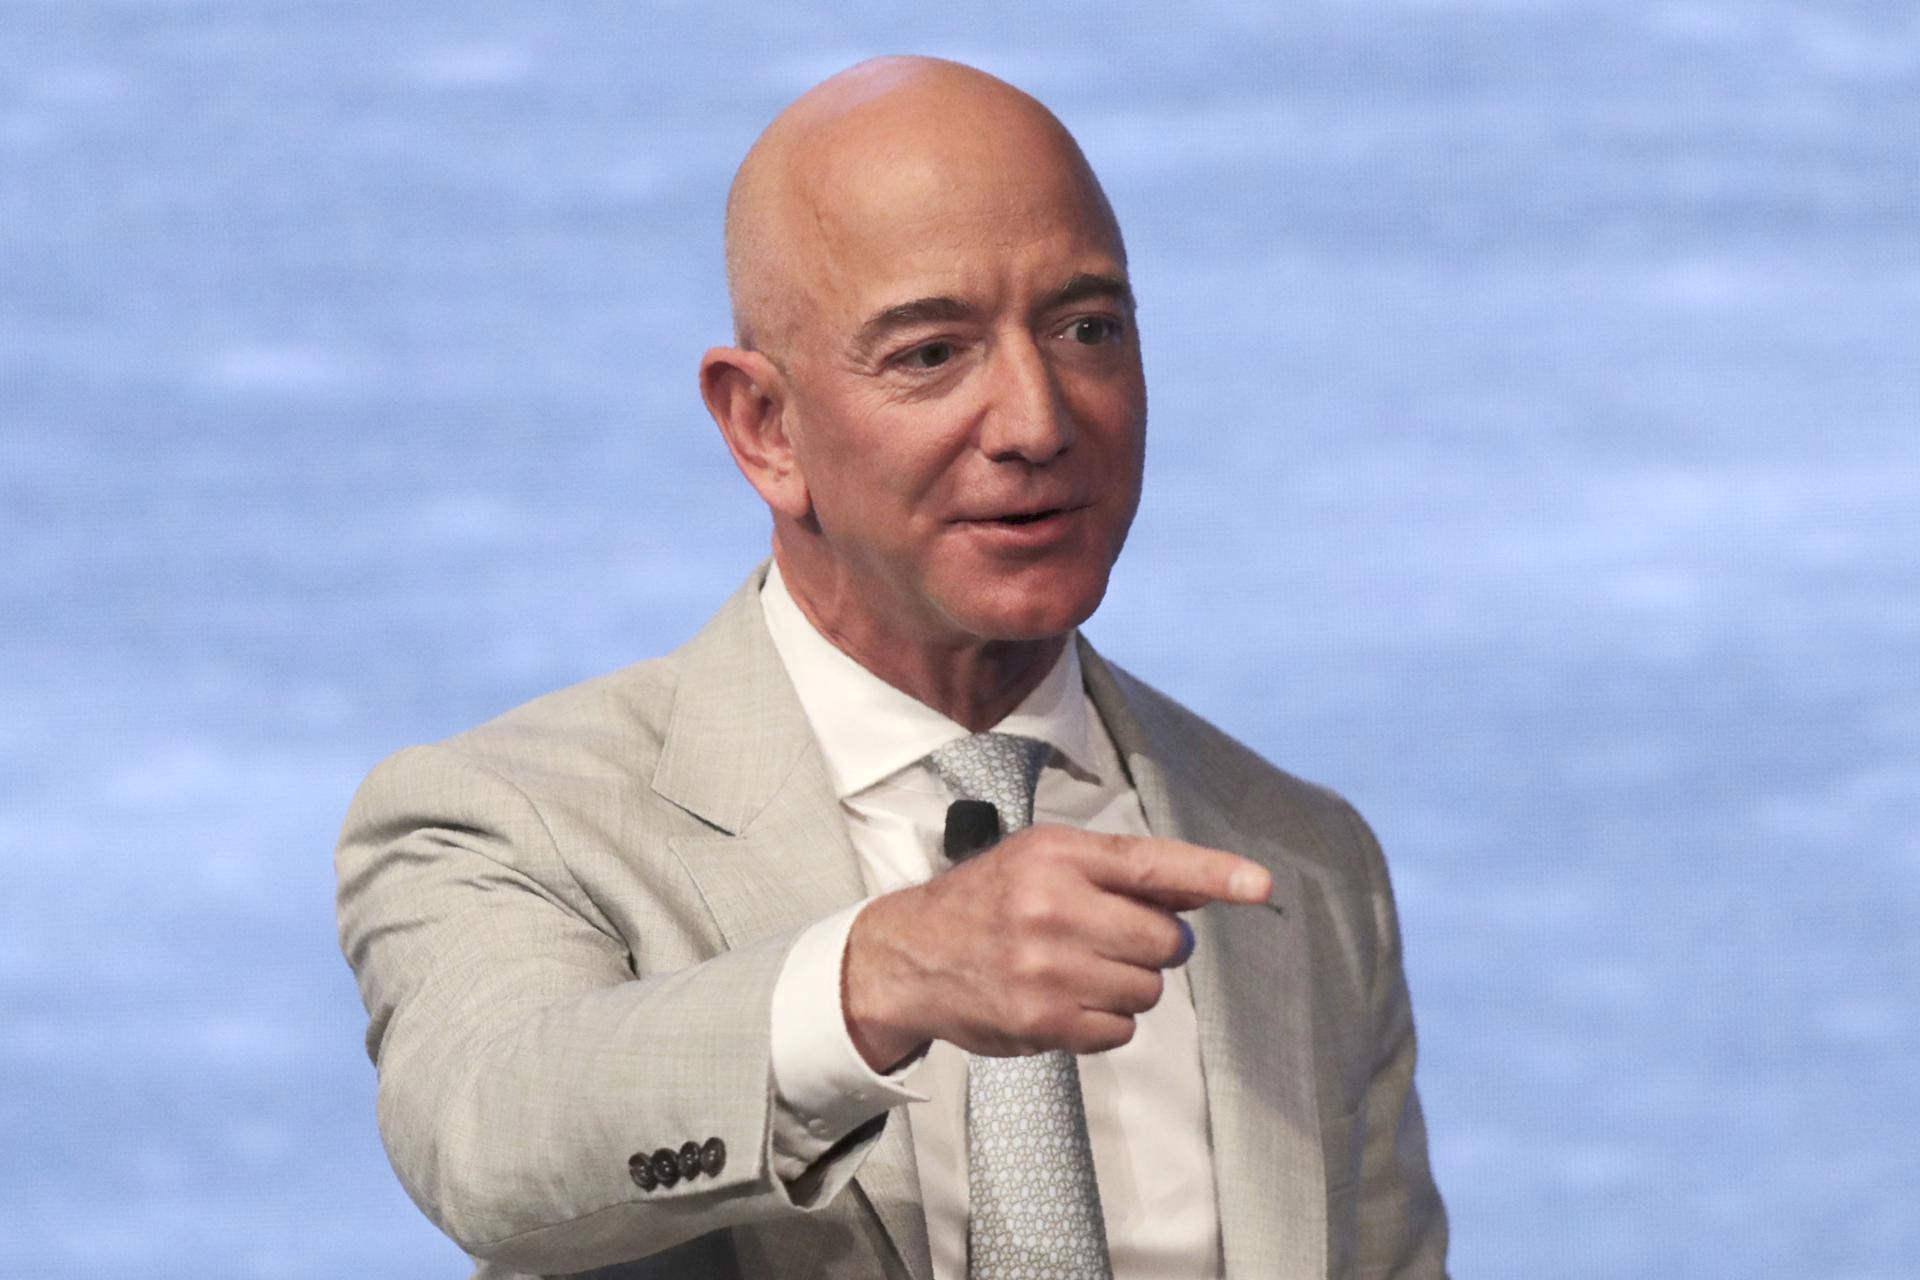 مرجع متخصصين ايران جف بيزوس / Jeff Bezos مديرعامل آمازون در كت شلوار سفيد مشغول سخنراني